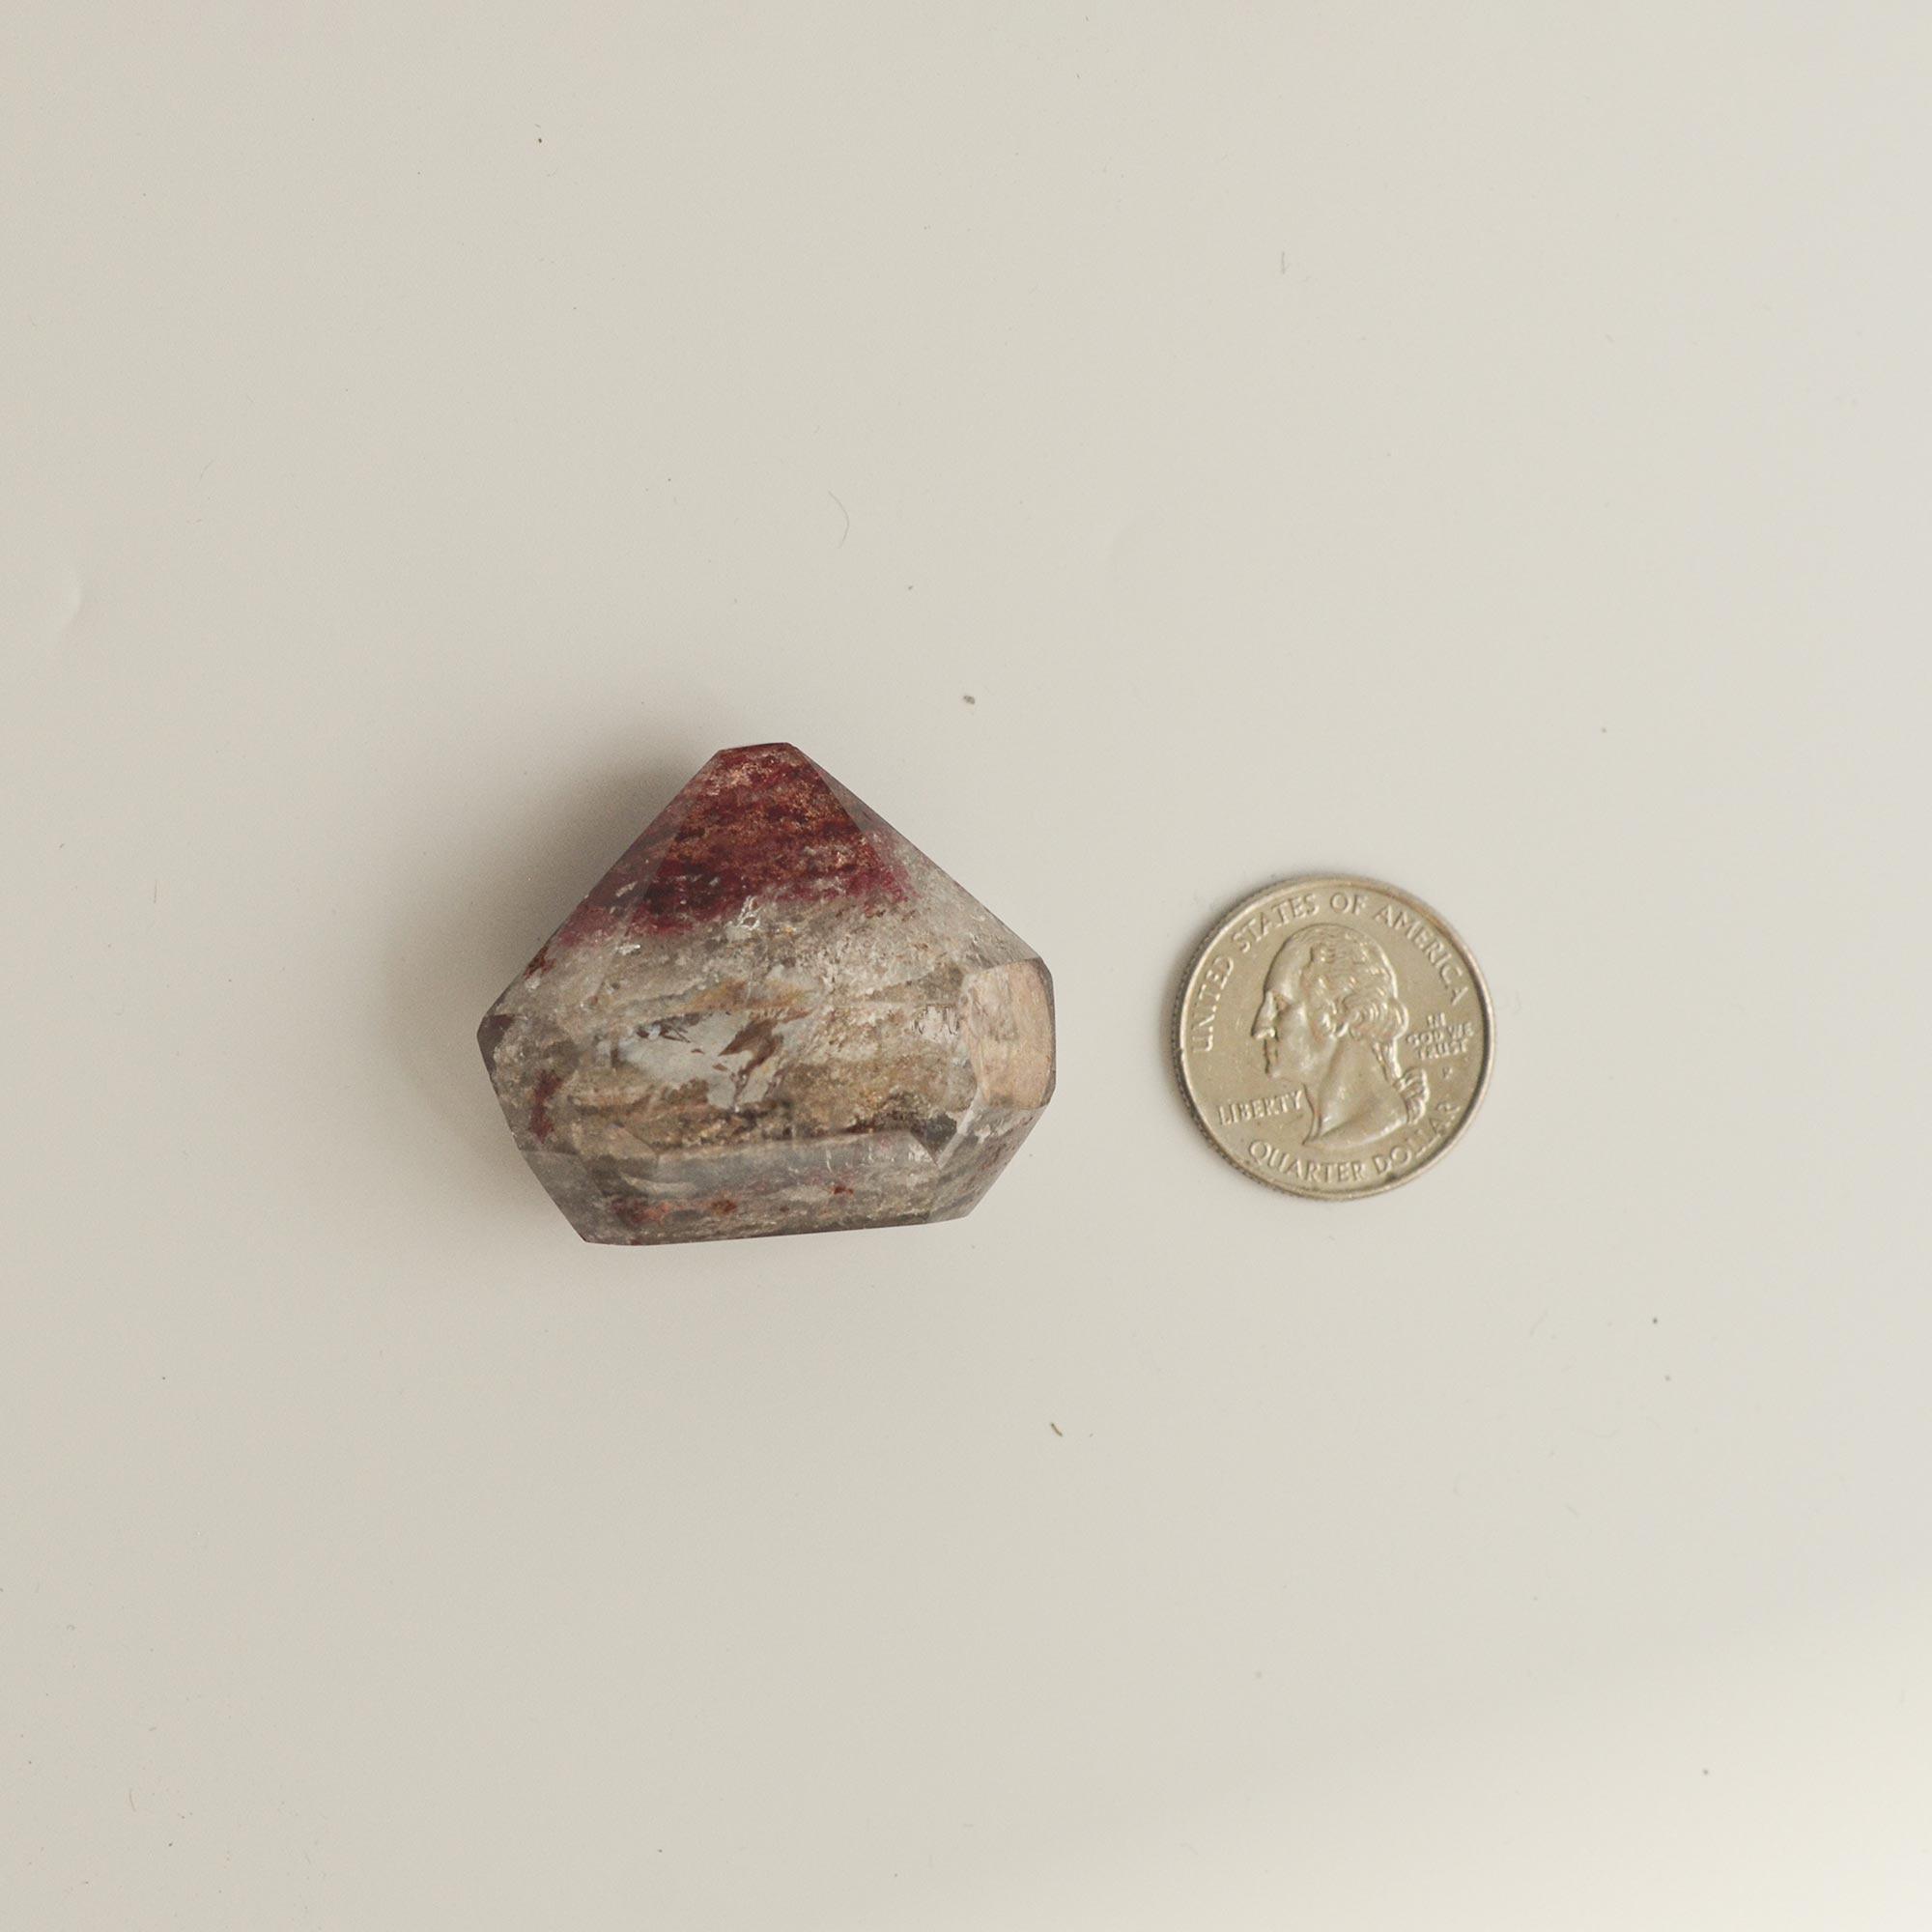 phantom quartz crystal and quarter dollar coin